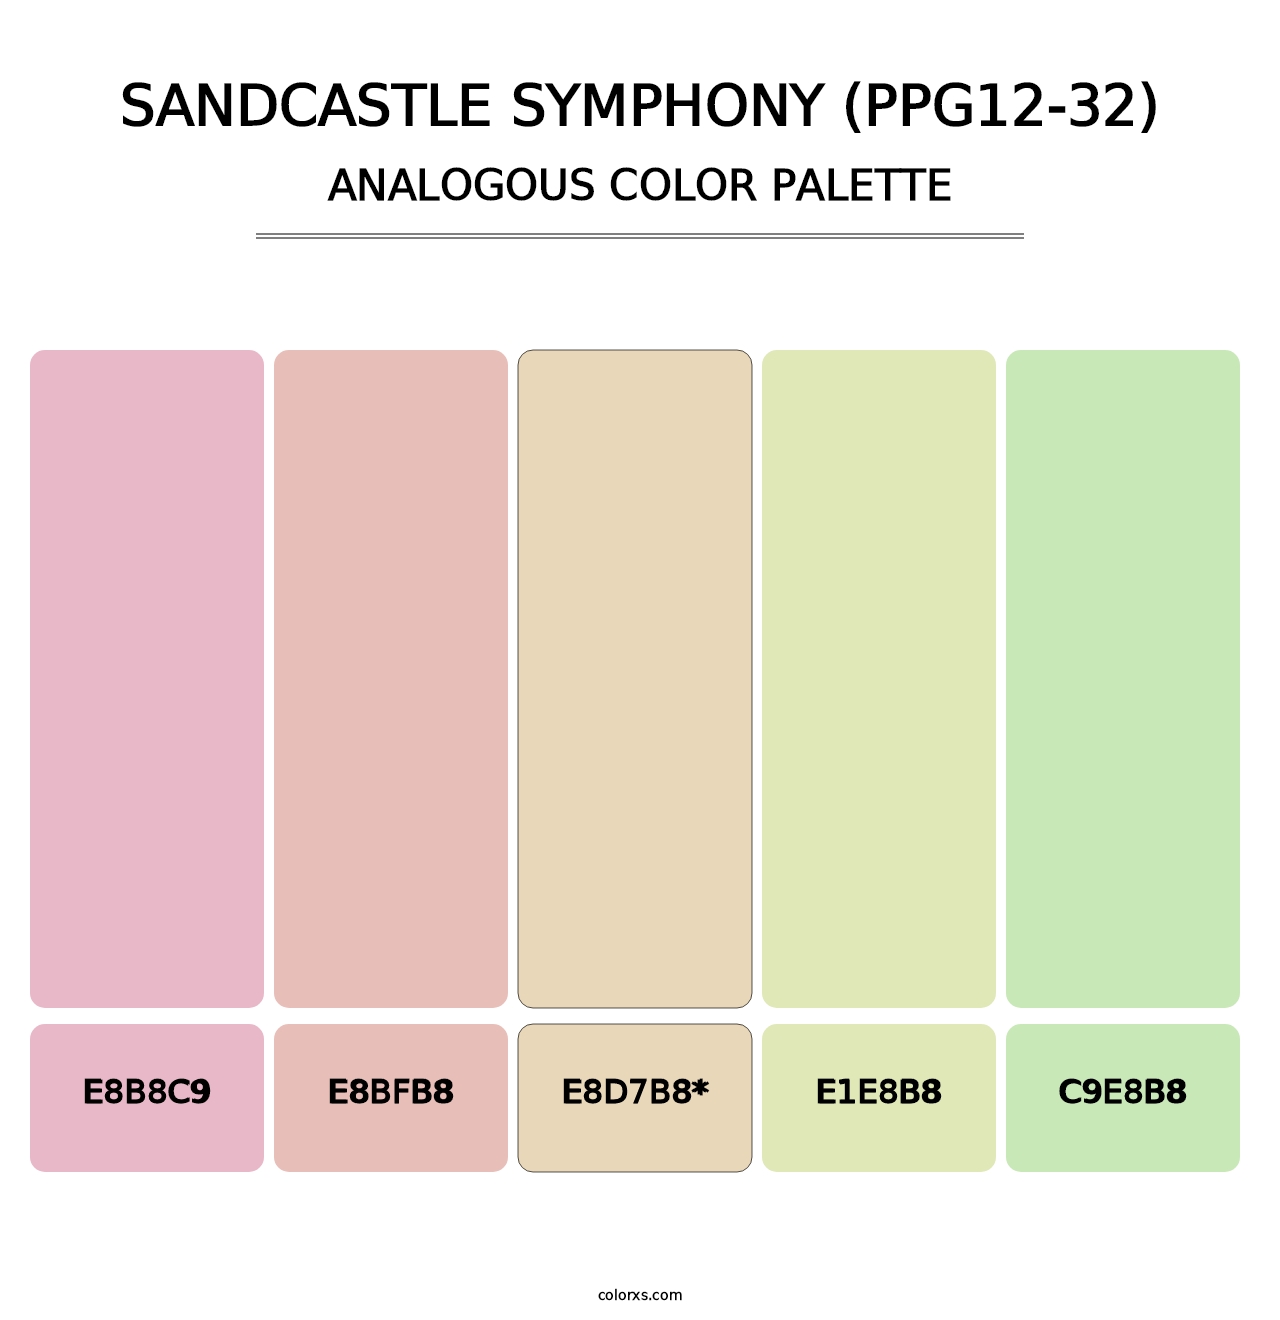 Sandcastle Symphony (PPG12-32) - Analogous Color Palette